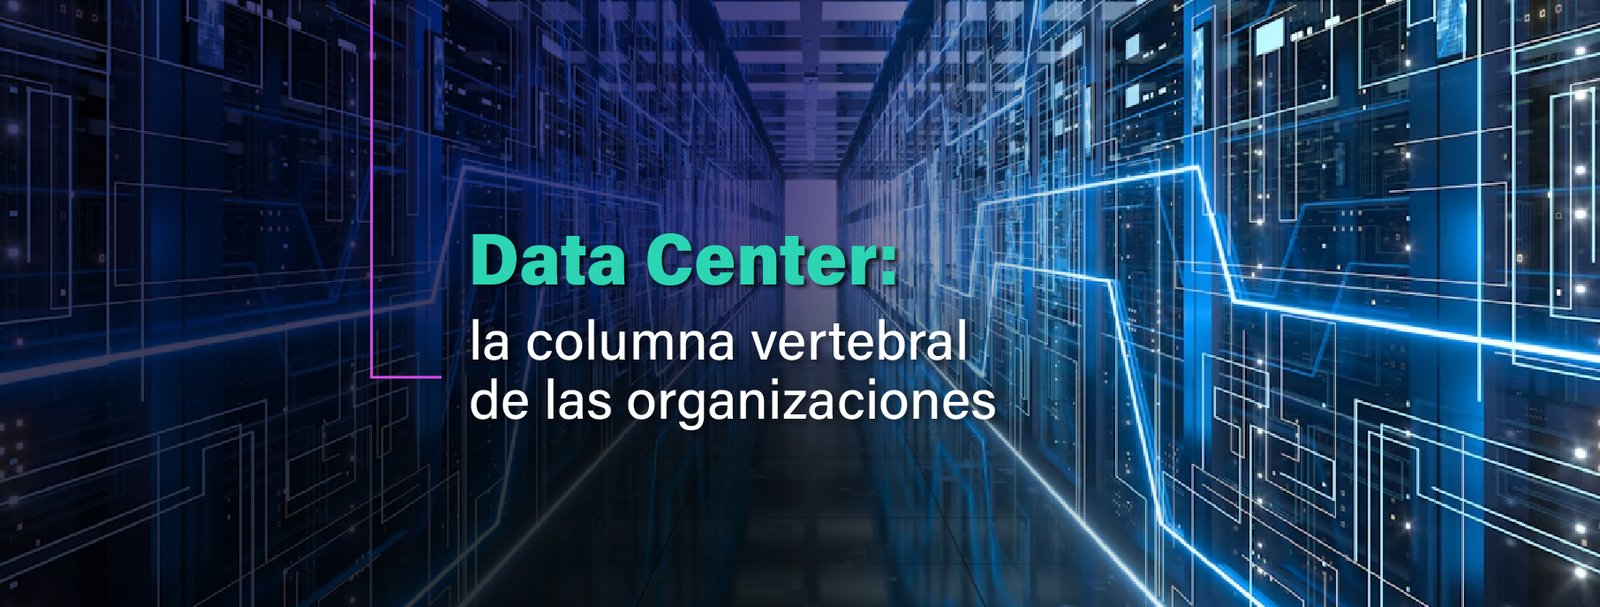 Data Center como columna vertebral de las organizaciones.